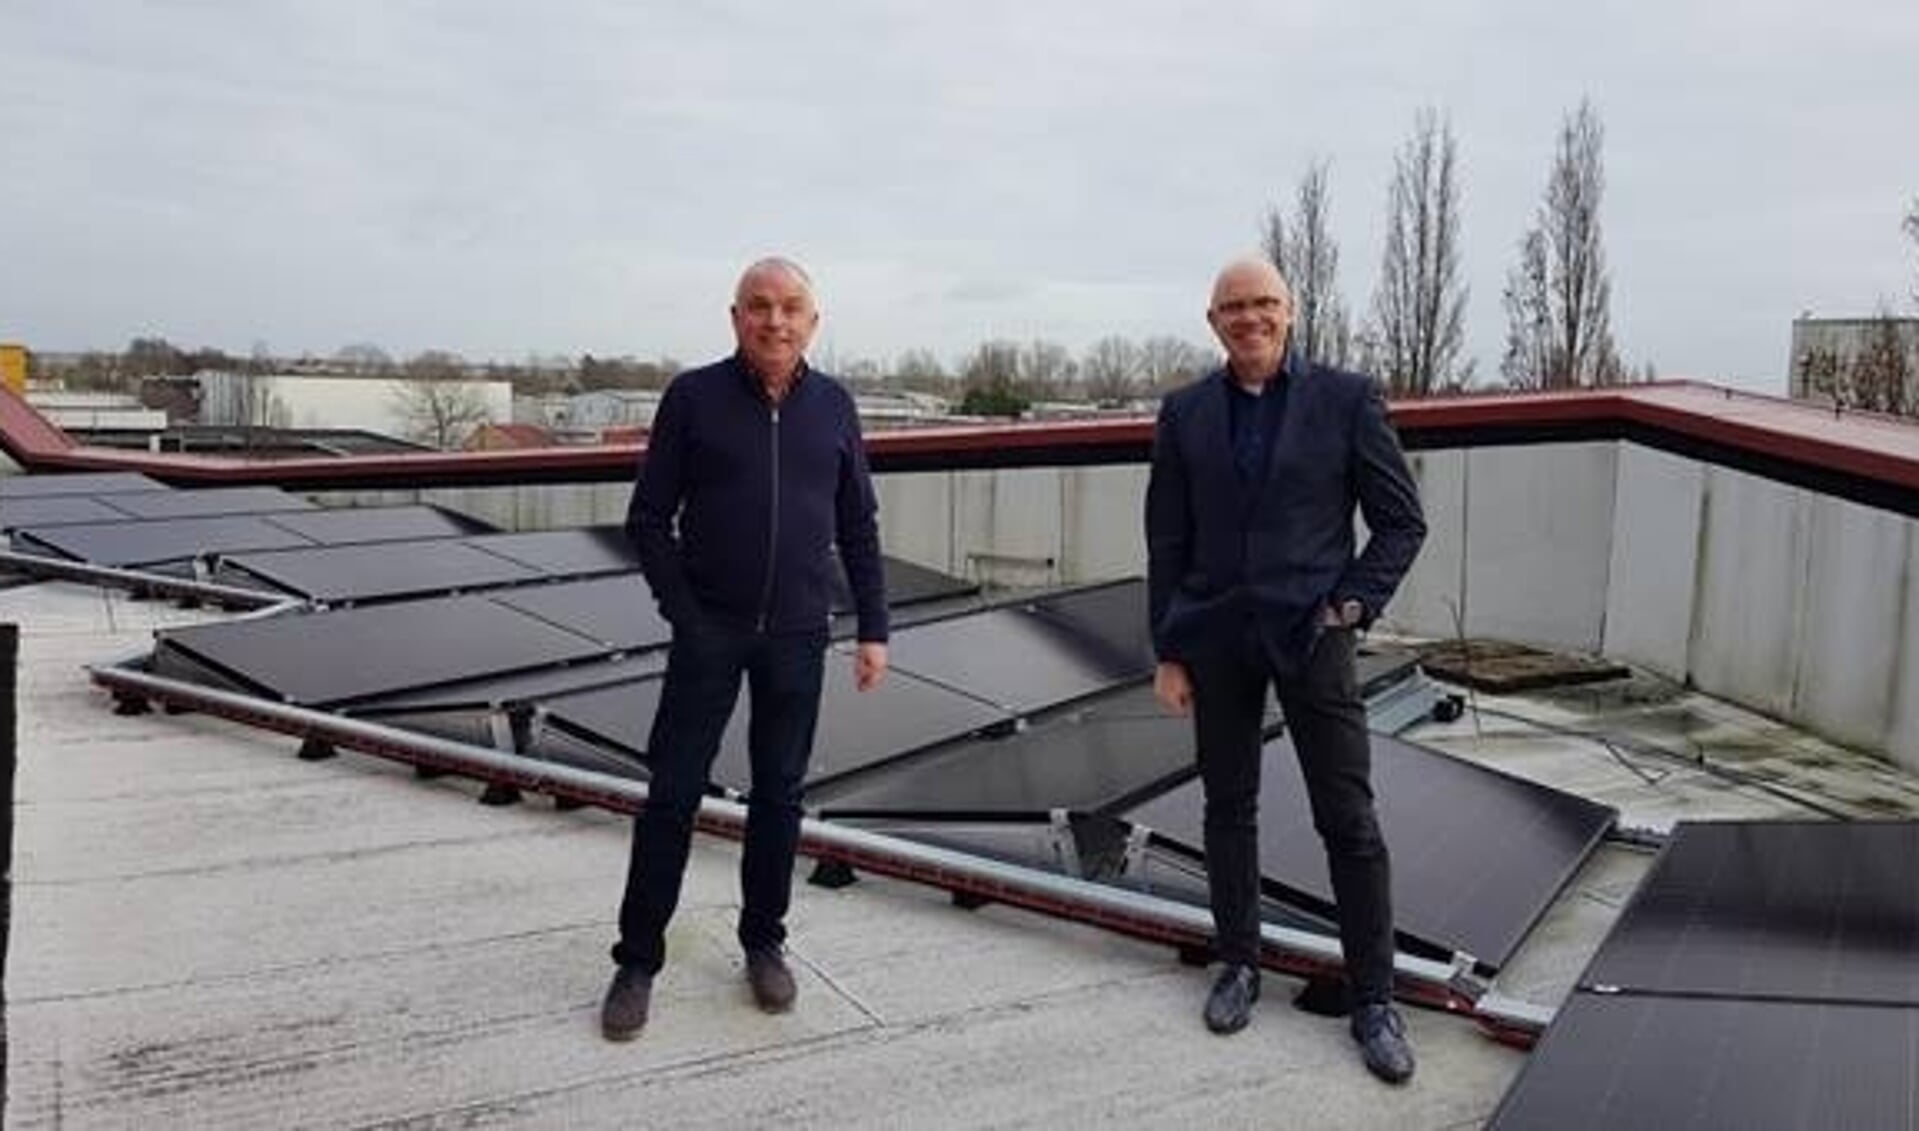 De nieuwe zonnepanelen op het dak van het gemeentehuis van Wormerland.